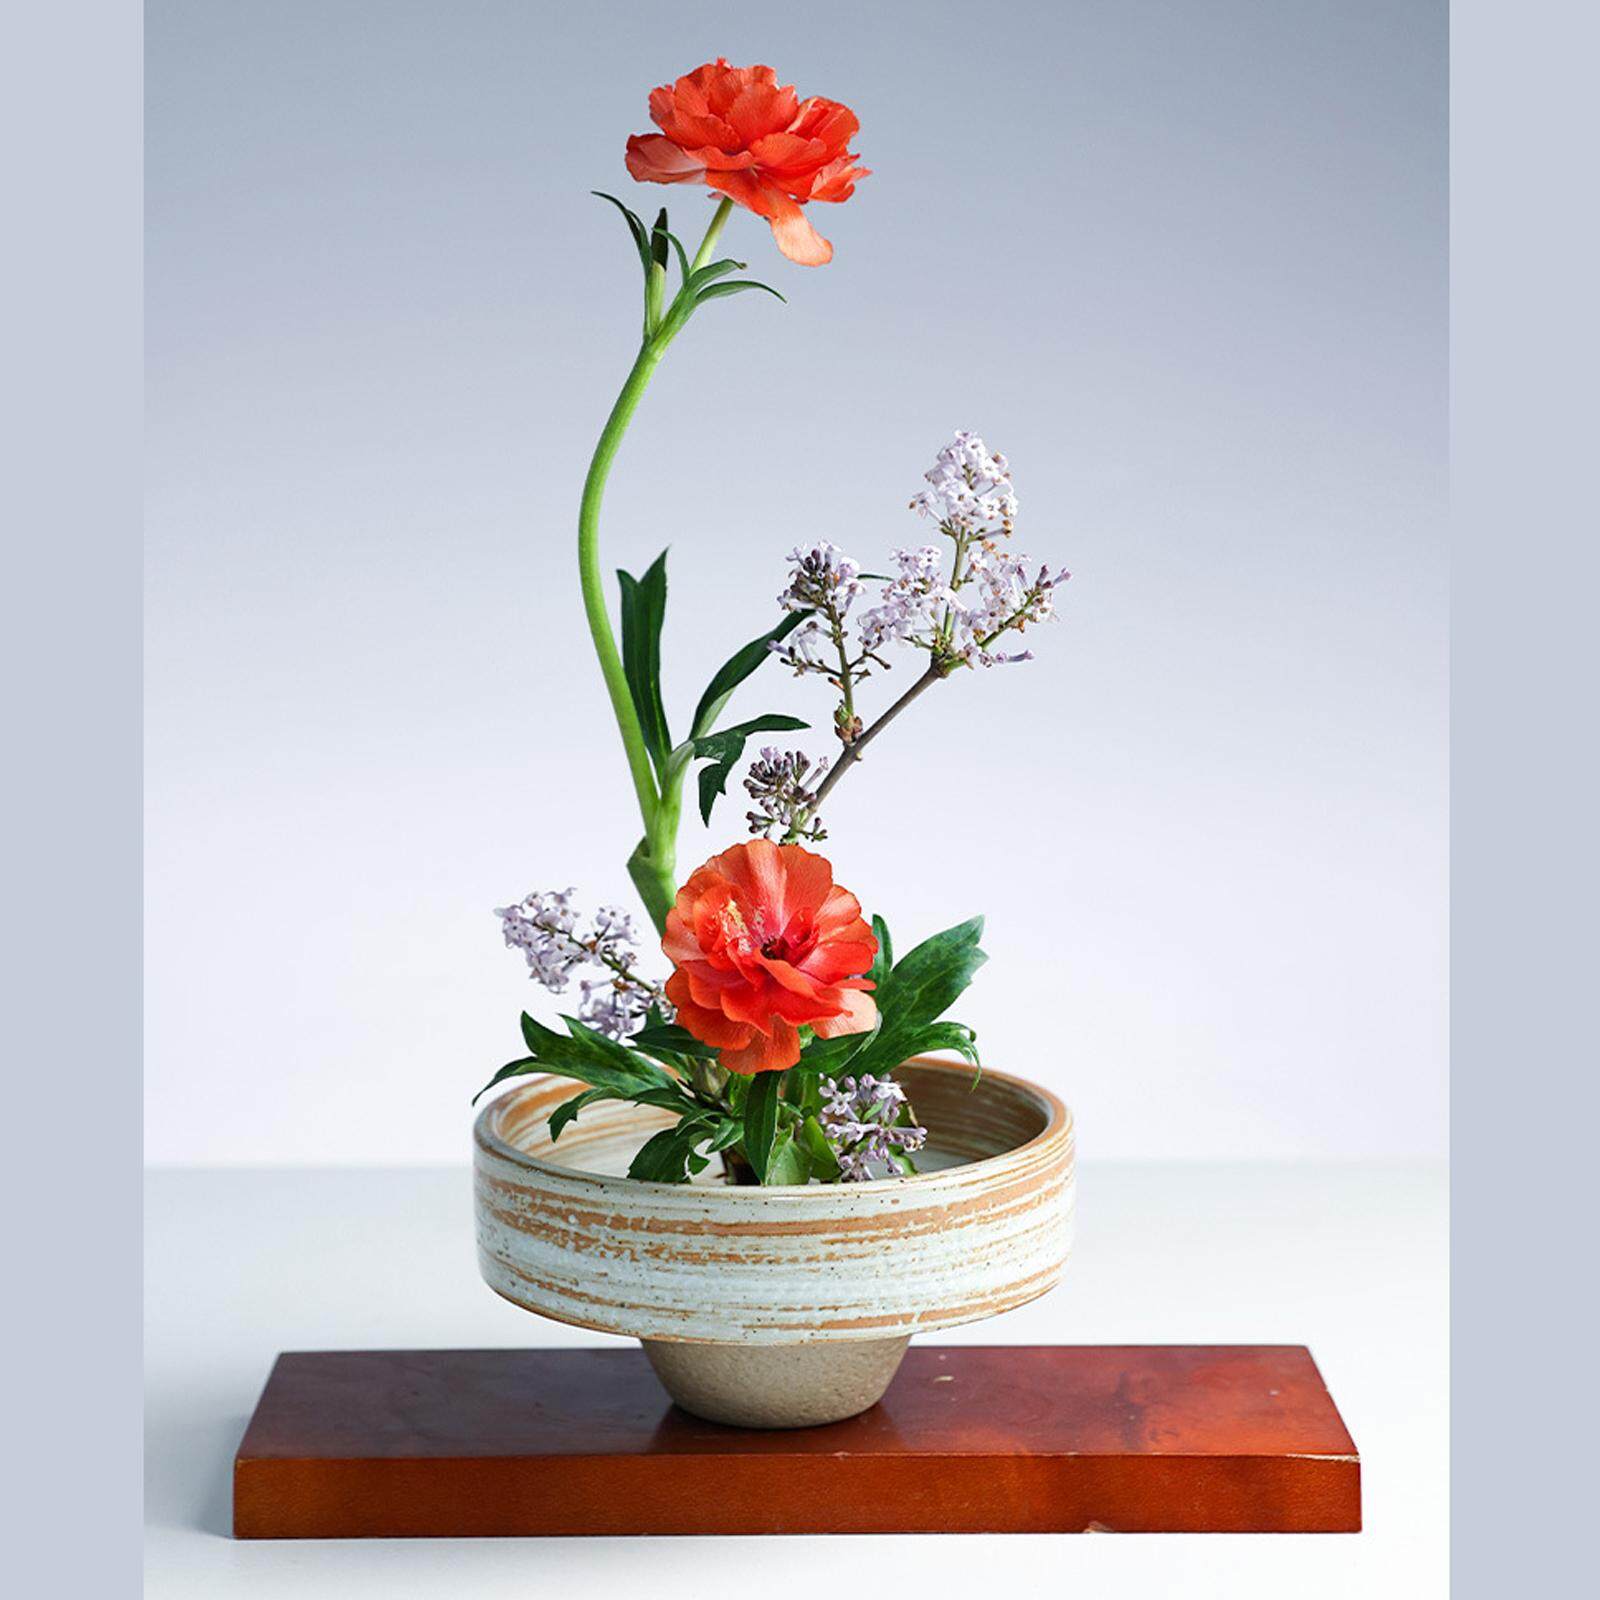 Mặt Trăng sứ ikebana bình bát tròn cắm hoa cổ điển đồ gốm cung cấp trà đạo